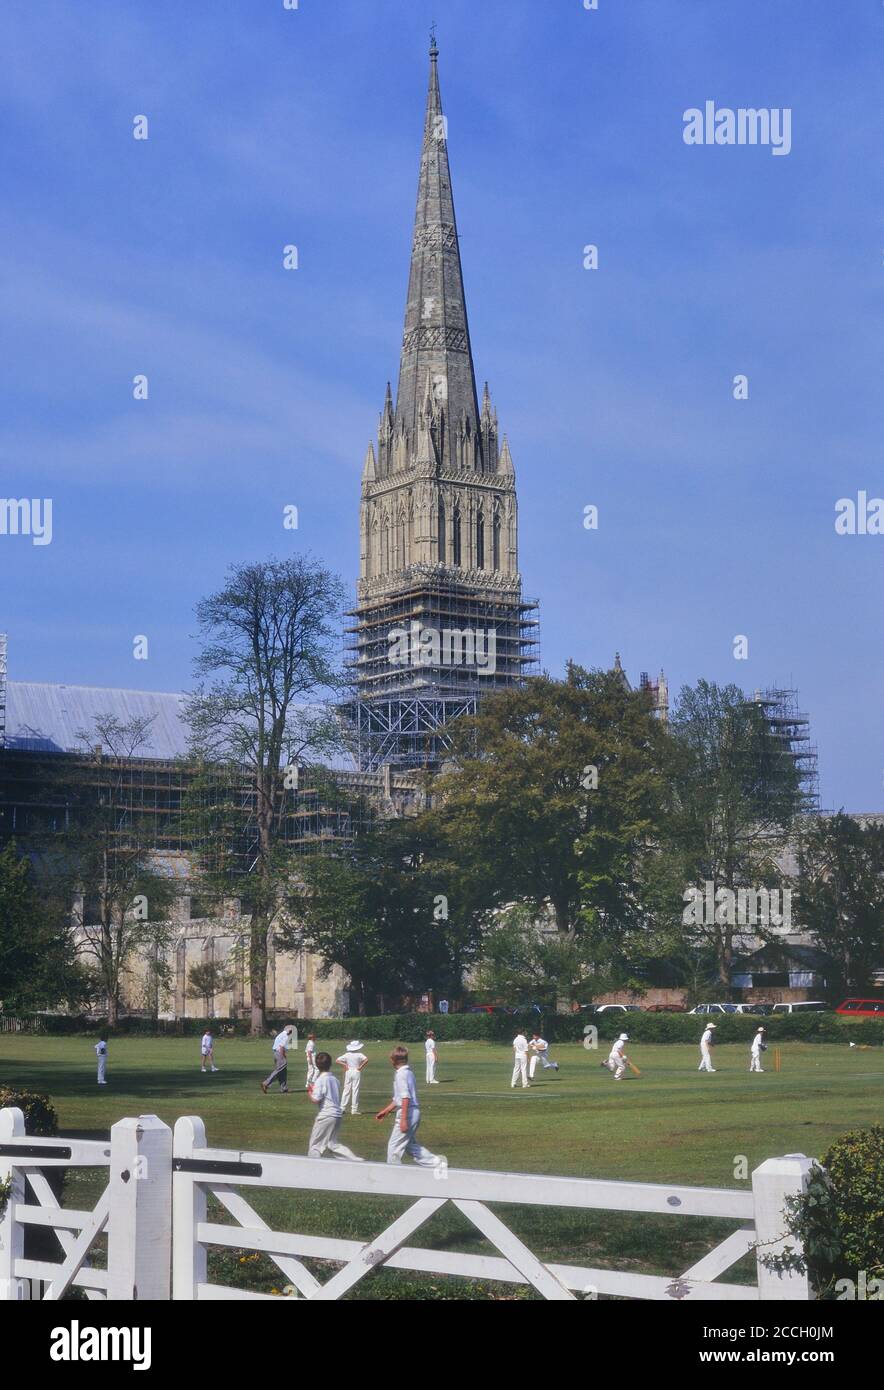 La partita di cricket dei ragazzi si svolge in vista della cattedrale di Salisbury, nel Wiltshire, Inghilterra, Regno Unito. Circa anni '90 Foto Stock